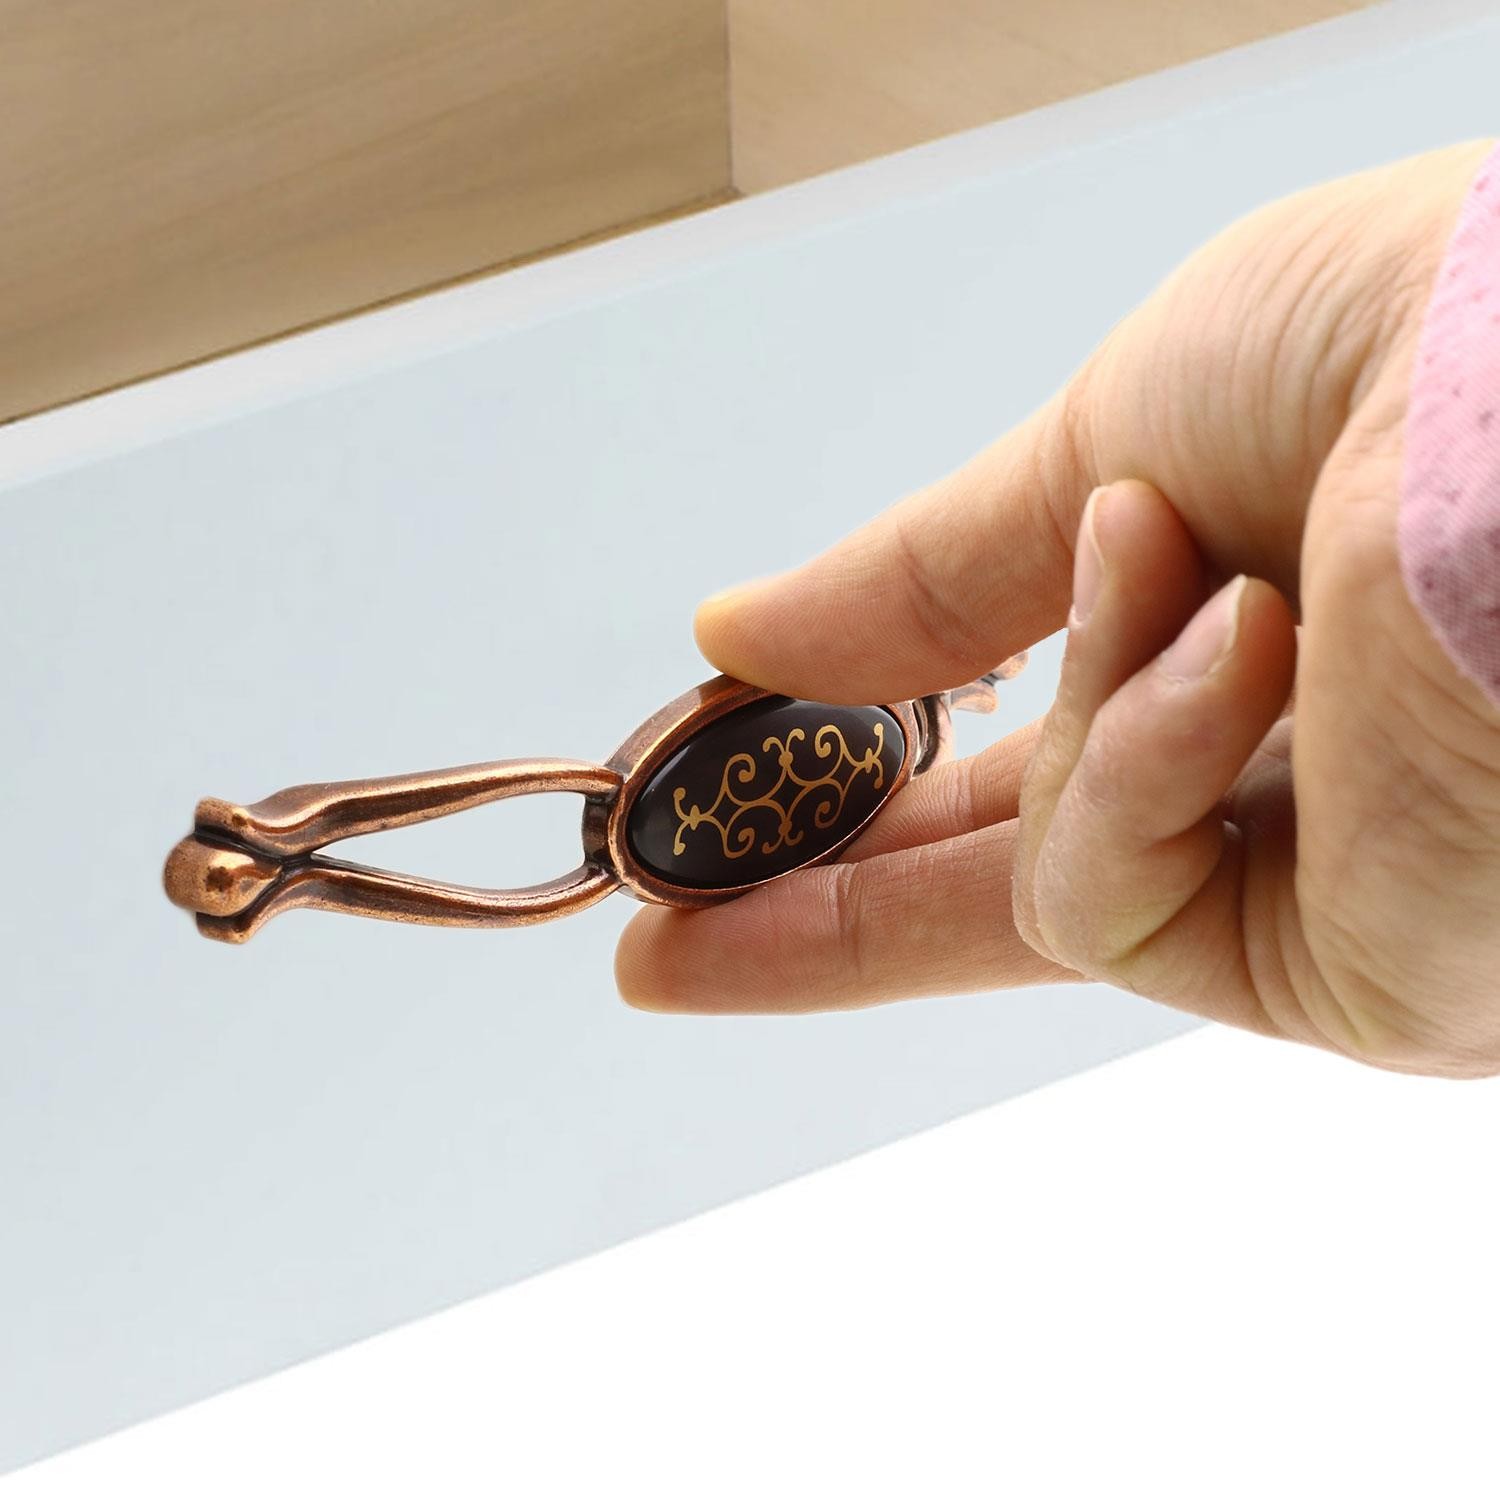 Erdem Çekmece Dolap Kapak Kulpu Kulbu 128 mm Antik Bakır Metal Kulp (4 ADET)